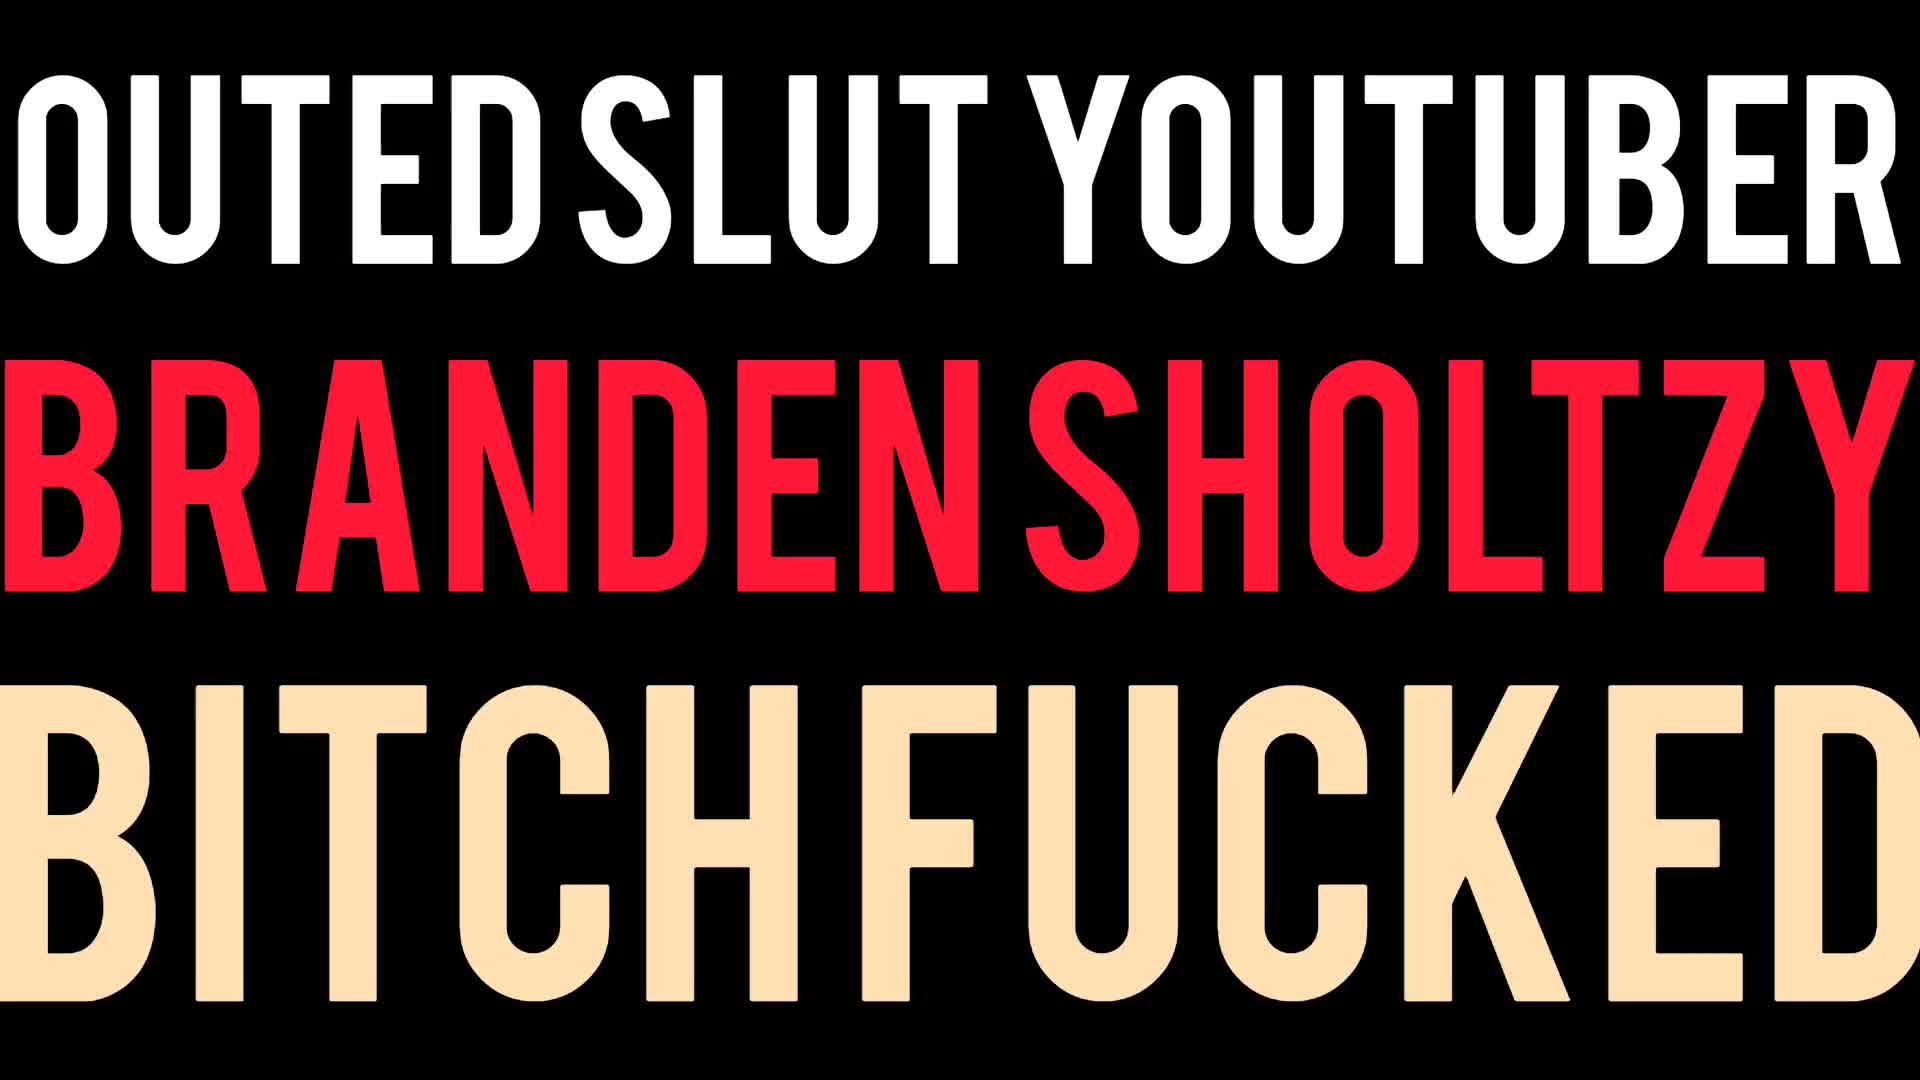 ¡La puta YouTuber Branden Sholtzy follada como una perra!